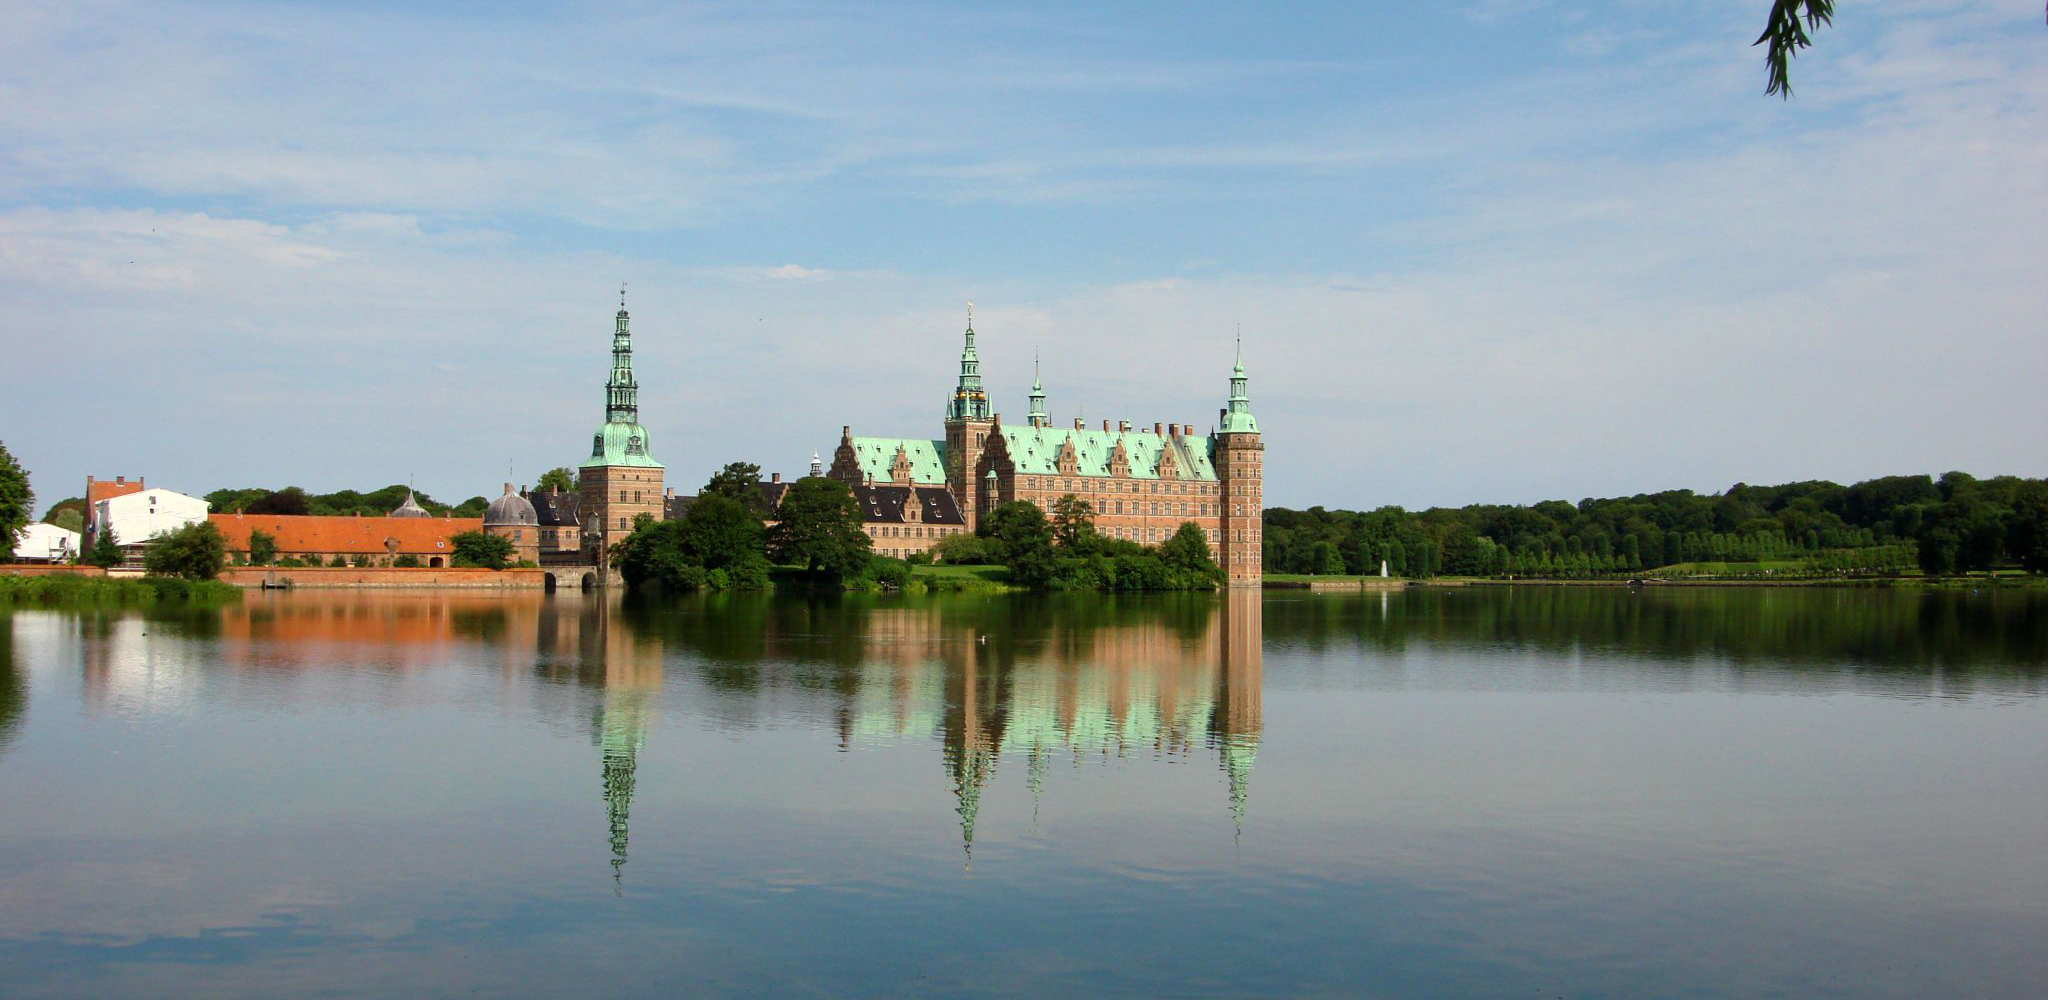 Những tòa lâu đài tráng lệ ở xứ sở thần tiên Đan Mạch